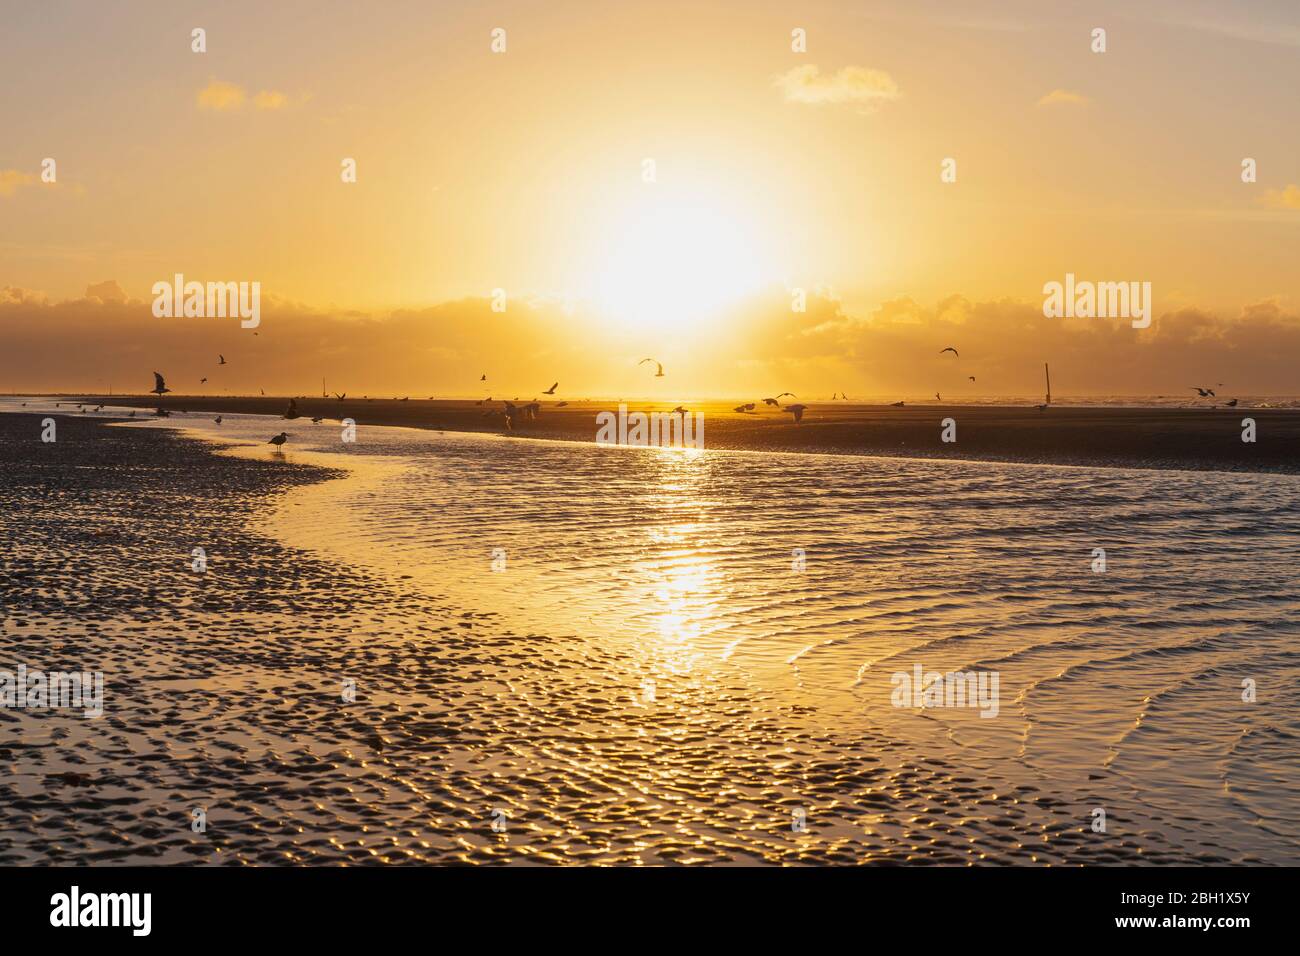 Silhouette mouettes sur la rive à la plage contre le ciel orange au coucher du soleil, côte de la mer du Nord, Flandre, Belgique Banque D'Images